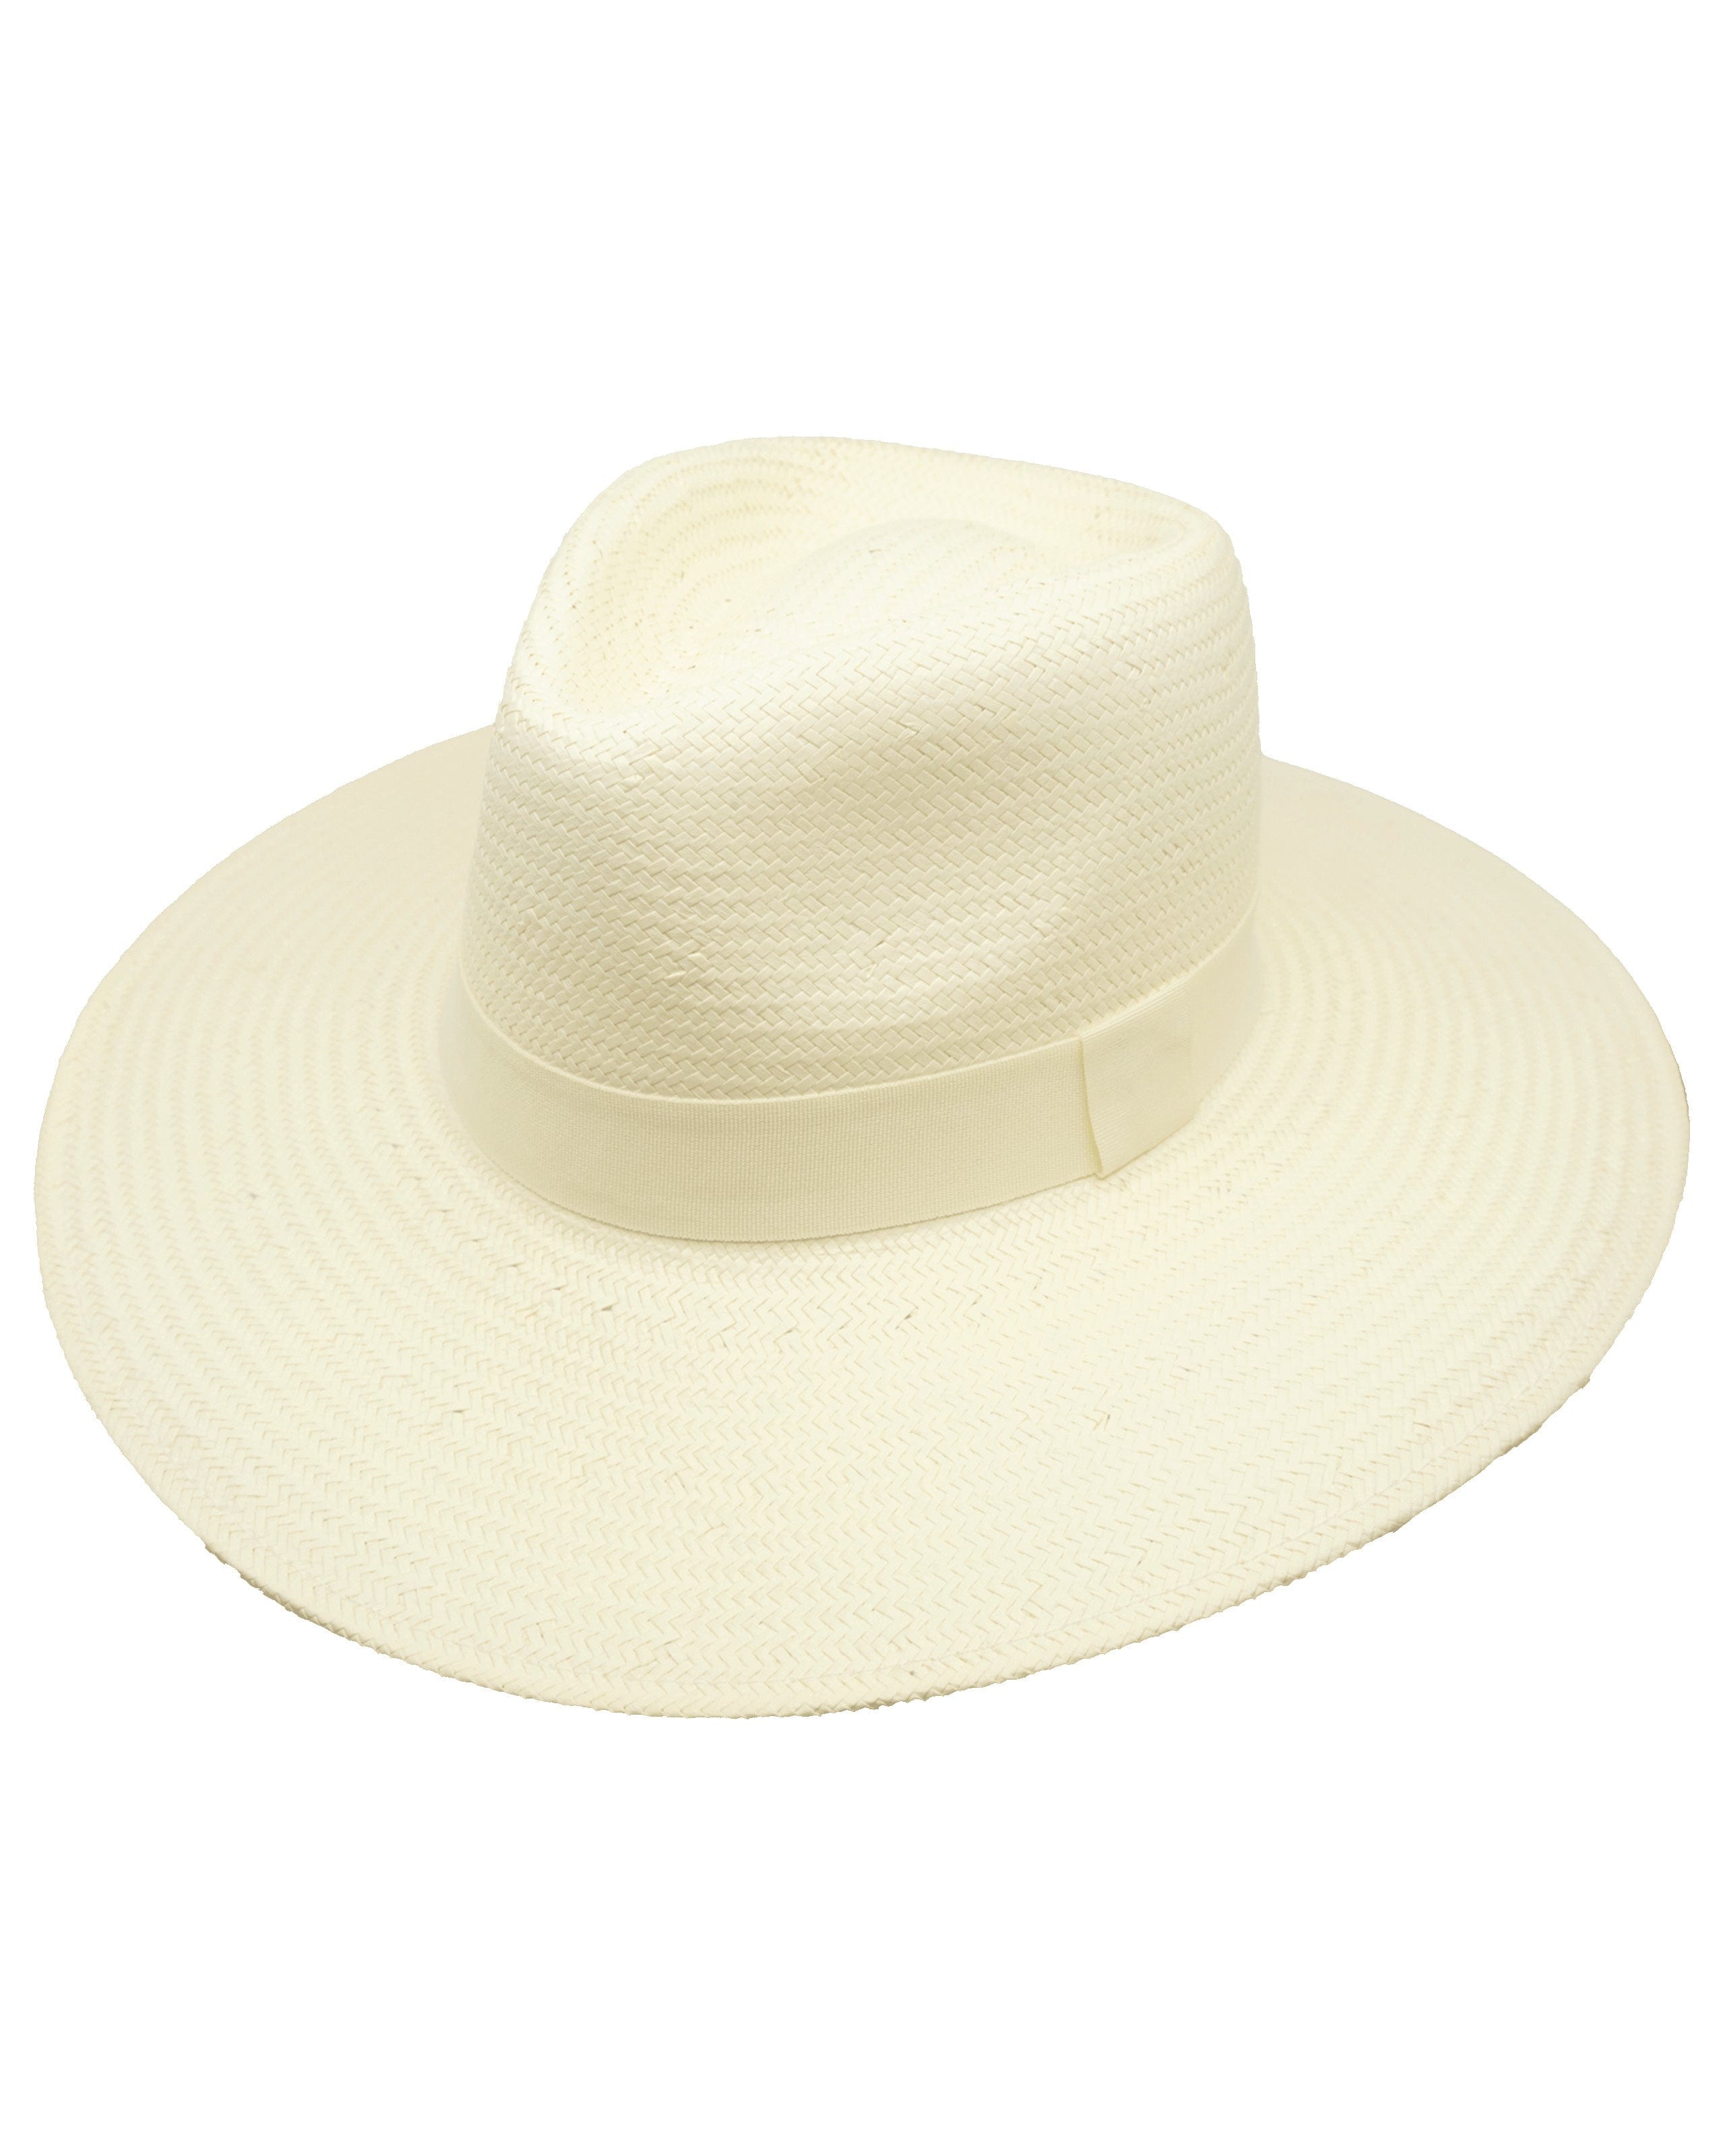 La Pine Straw Hat